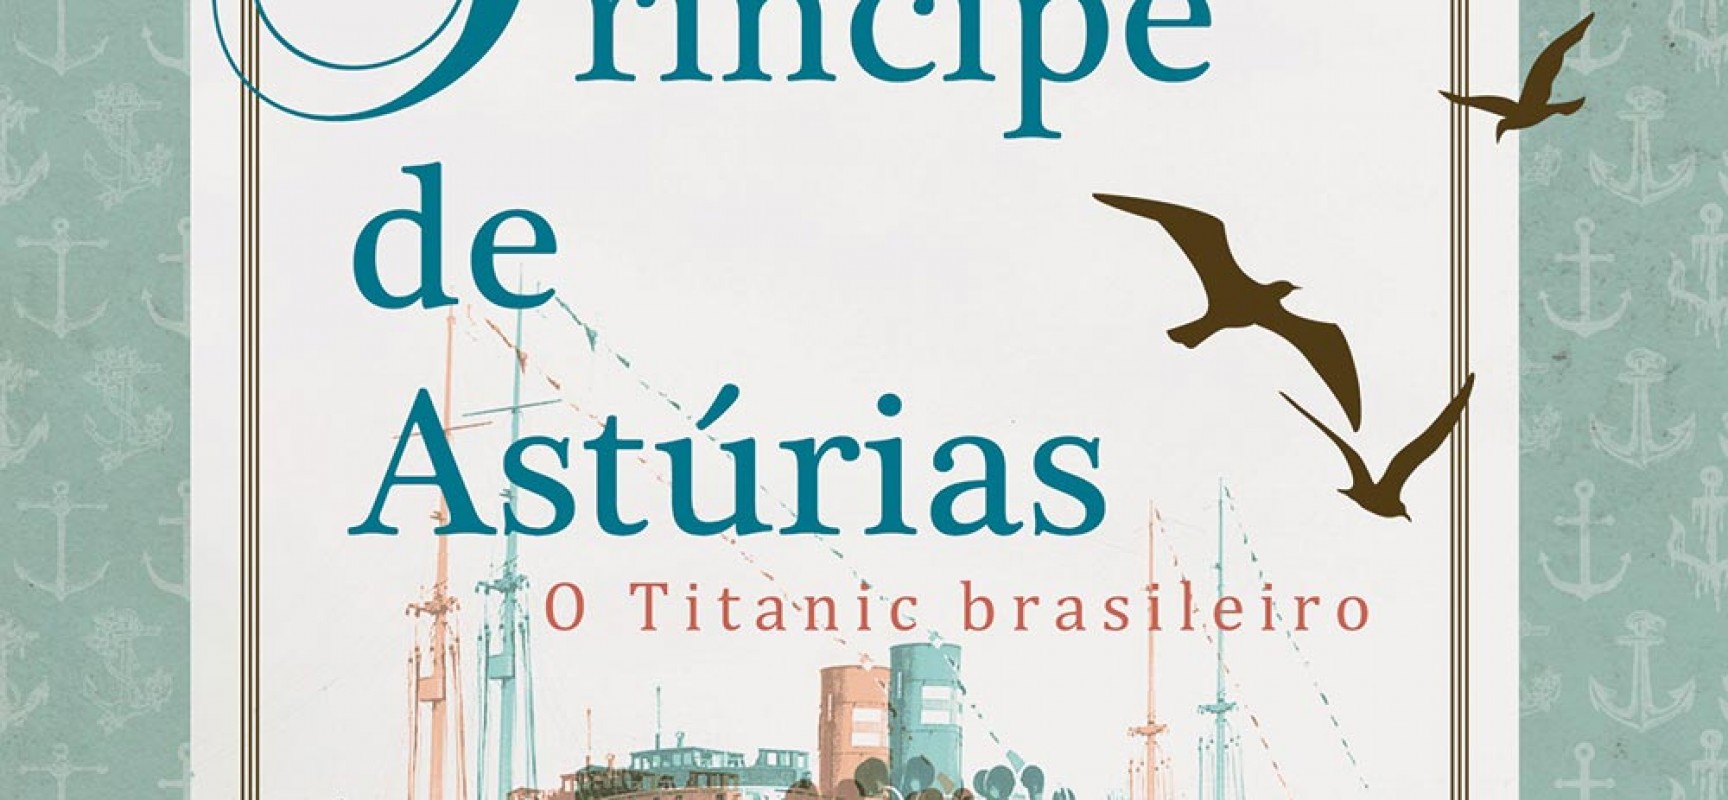 História sobre o Titanic brasileiro é tema do novo livro da Editora Moderna